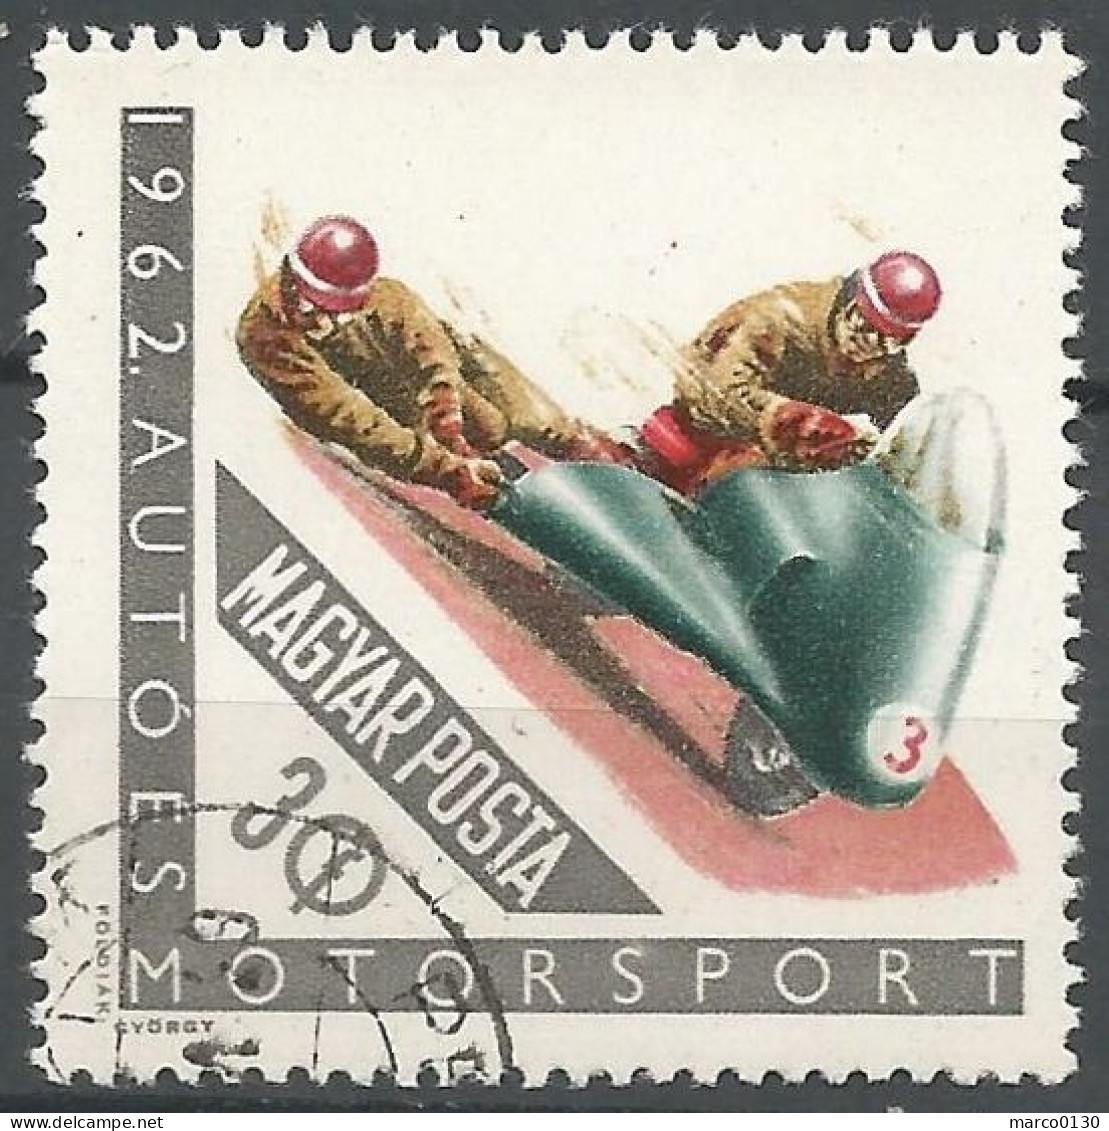 HONGRIE SERIE COMPLETE DU N° 1530 AU N° 1538 OBLITERE - Used Stamps